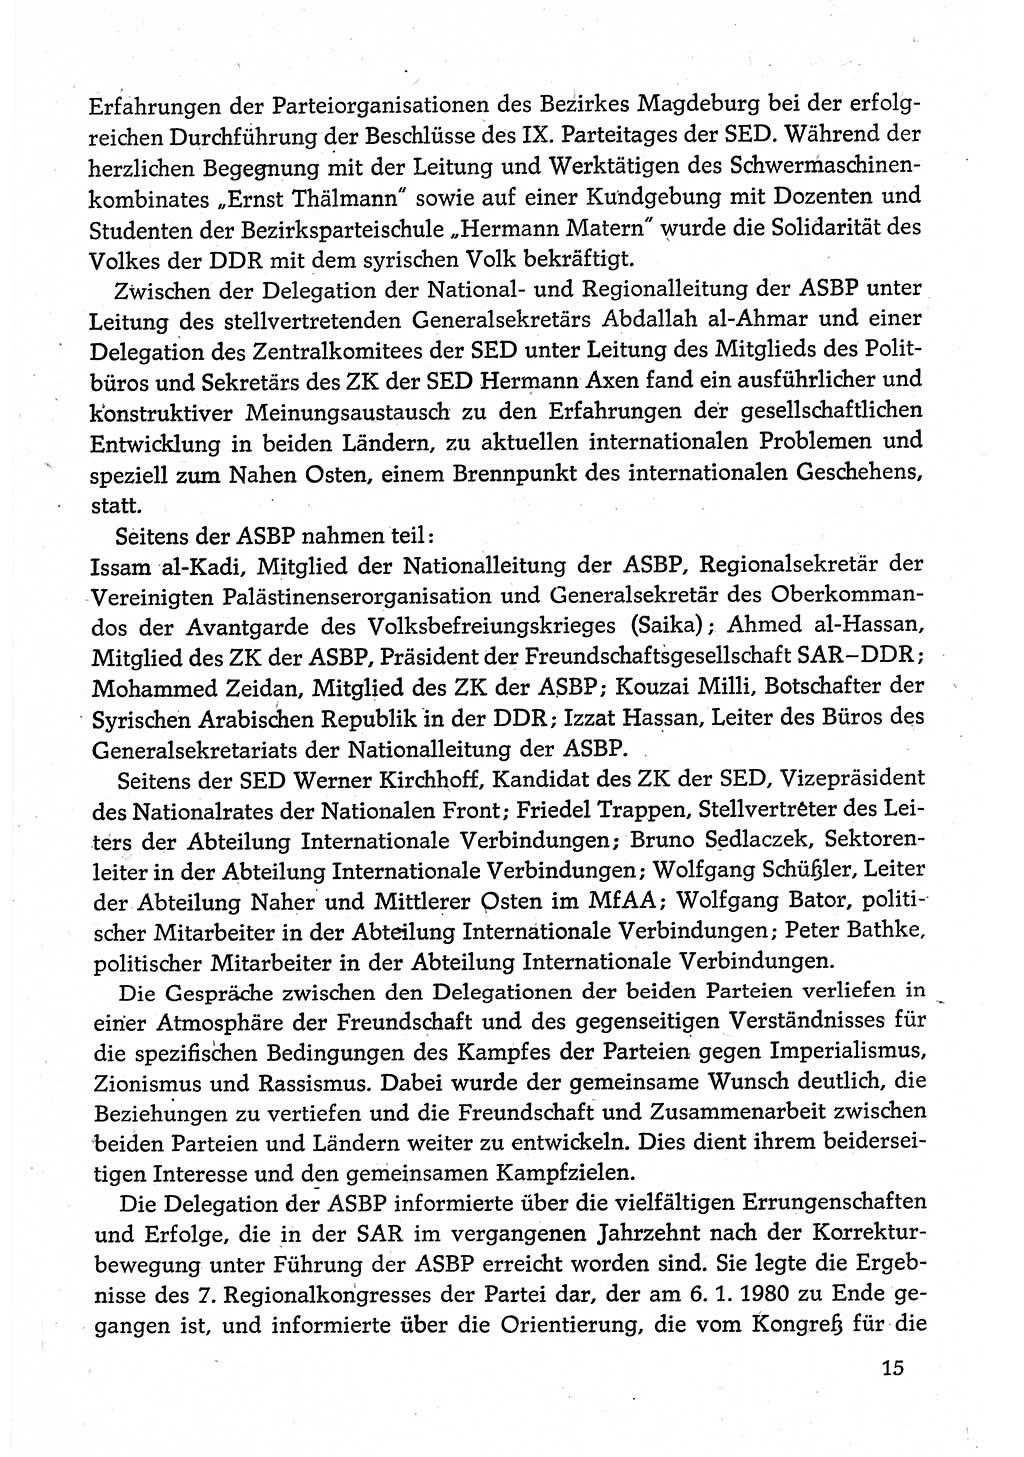 Dokumente der Sozialistischen Einheitspartei Deutschlands (SED) [Deutsche Demokratische Republik (DDR)] 1980-1981, Seite 15 (Dok. SED DDR 1980-1981, S. 15)